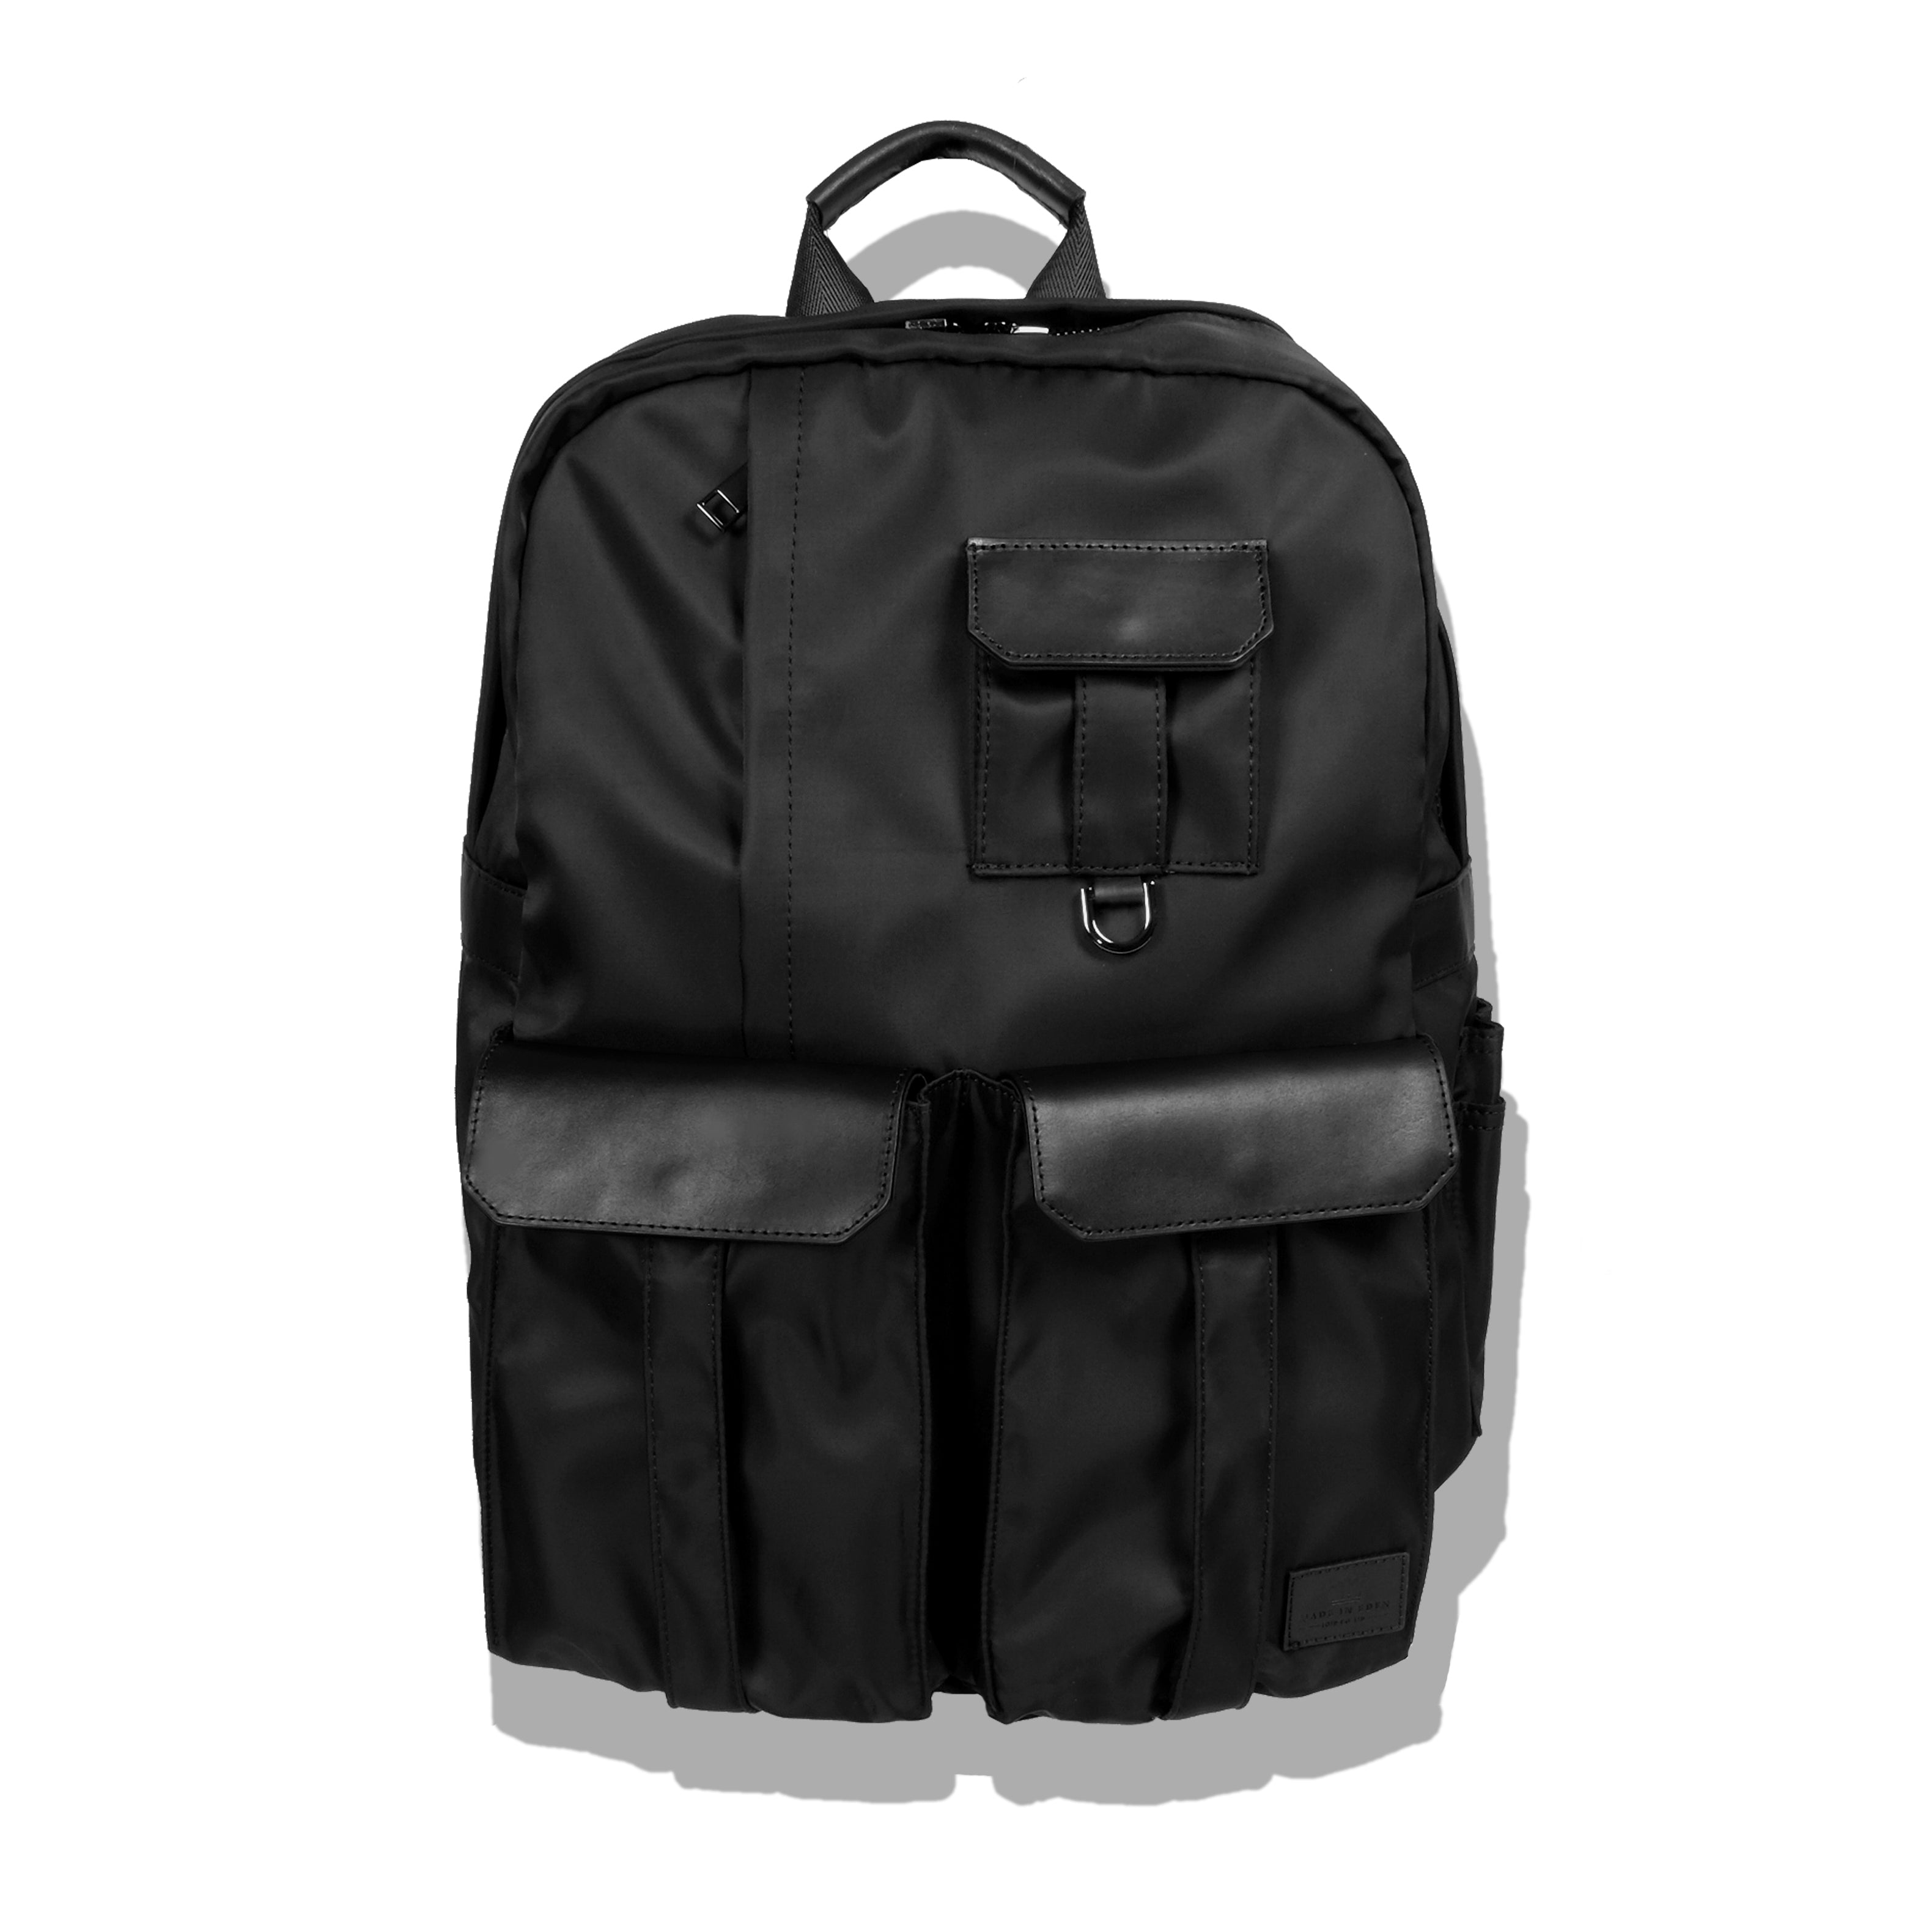 BRUTALIST Backpack – Made In Eden